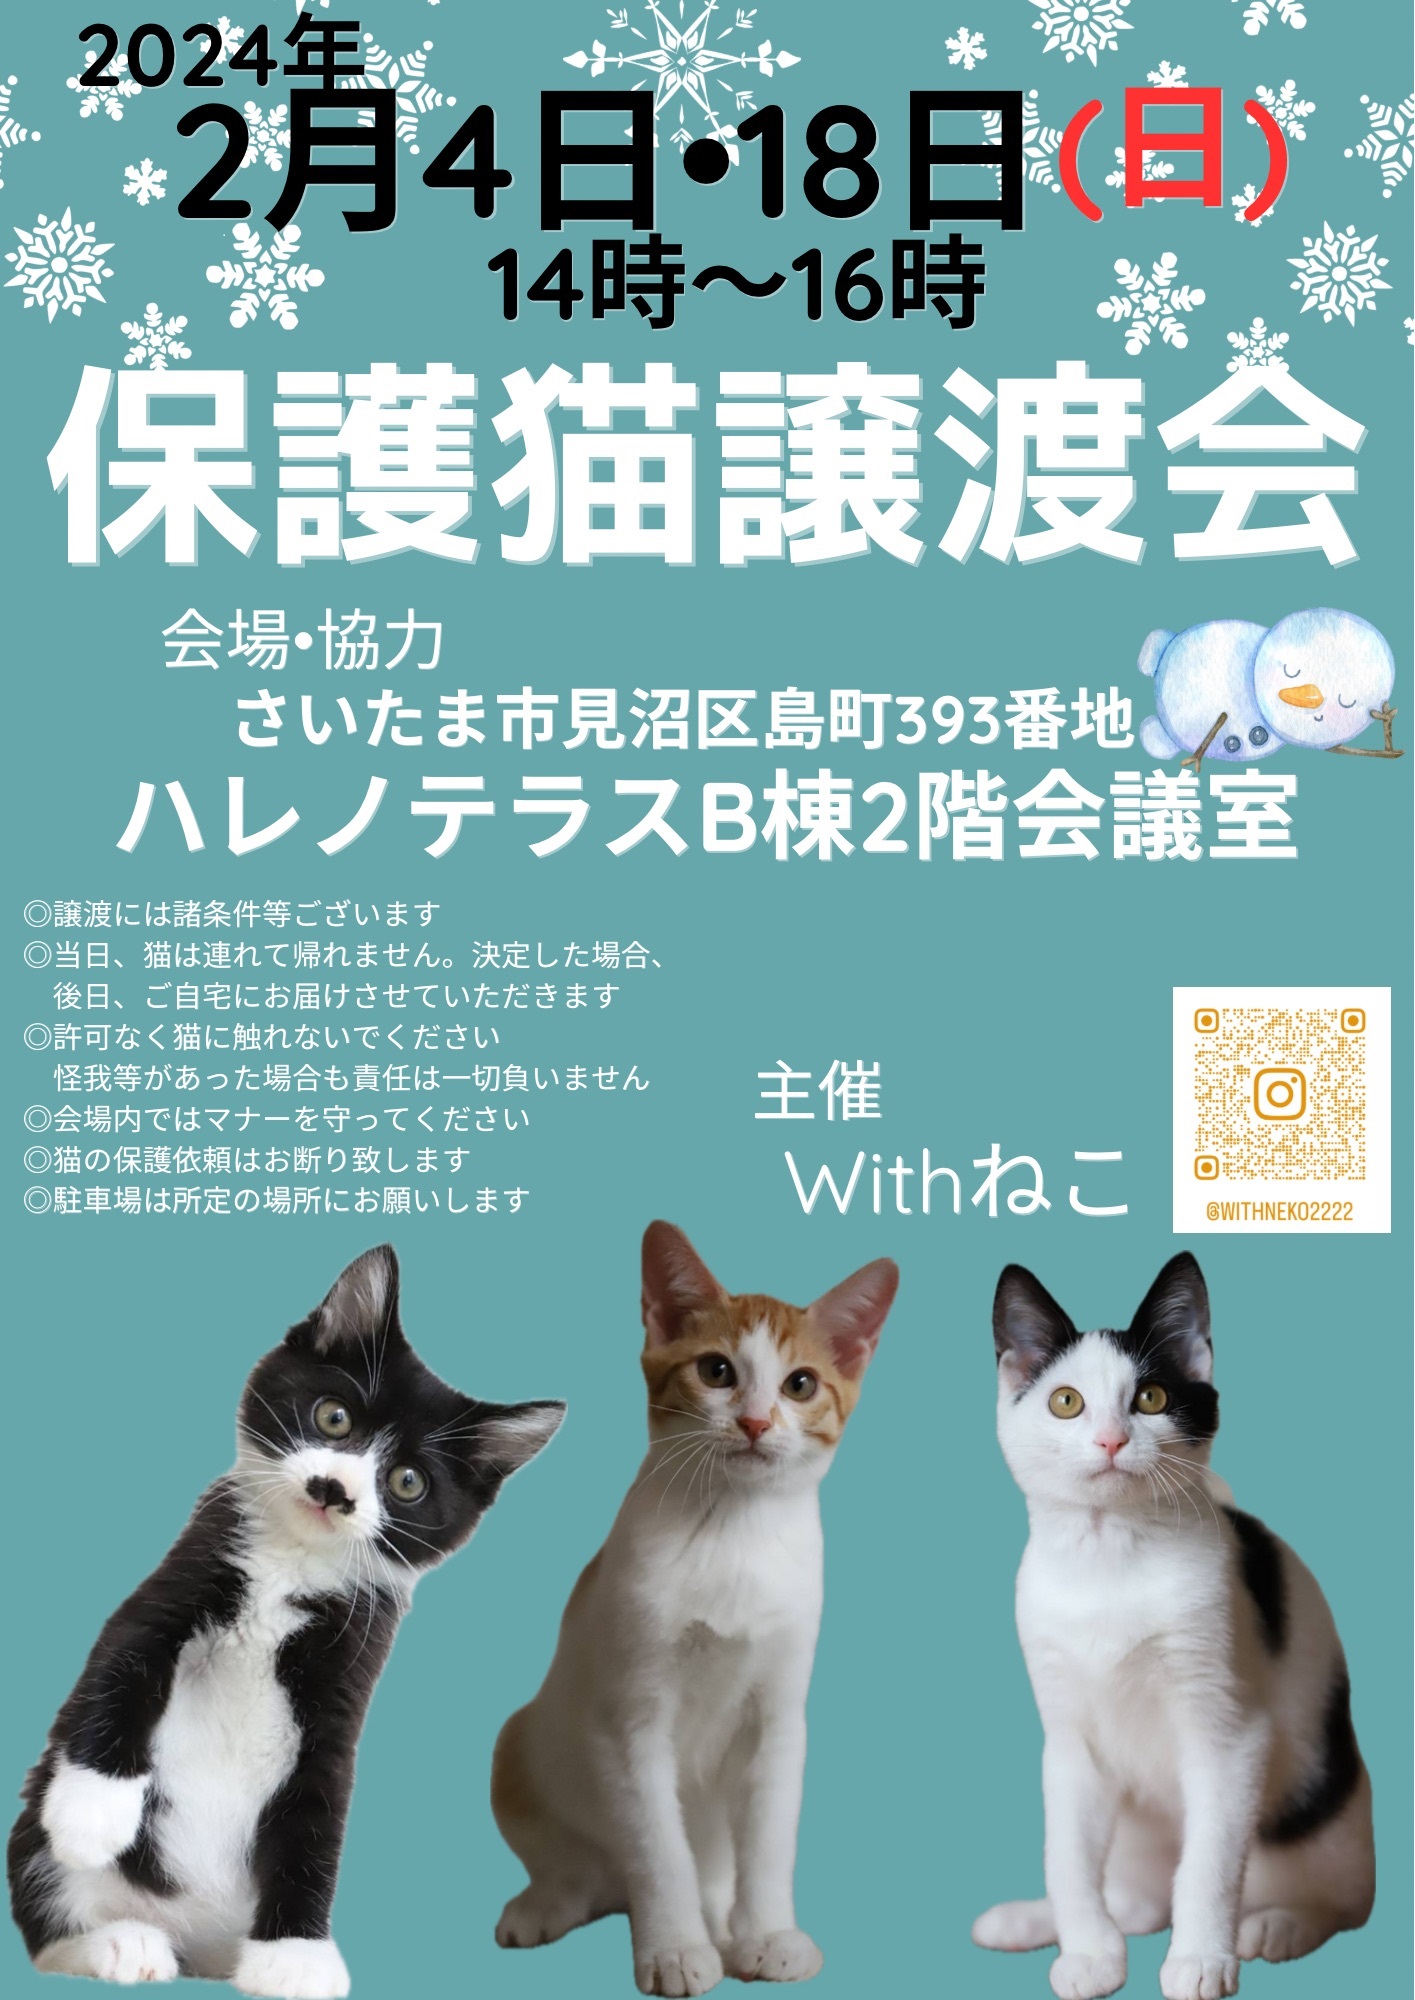 【さいたま市】2/4(日)ハレノテラス保護猫譲渡会